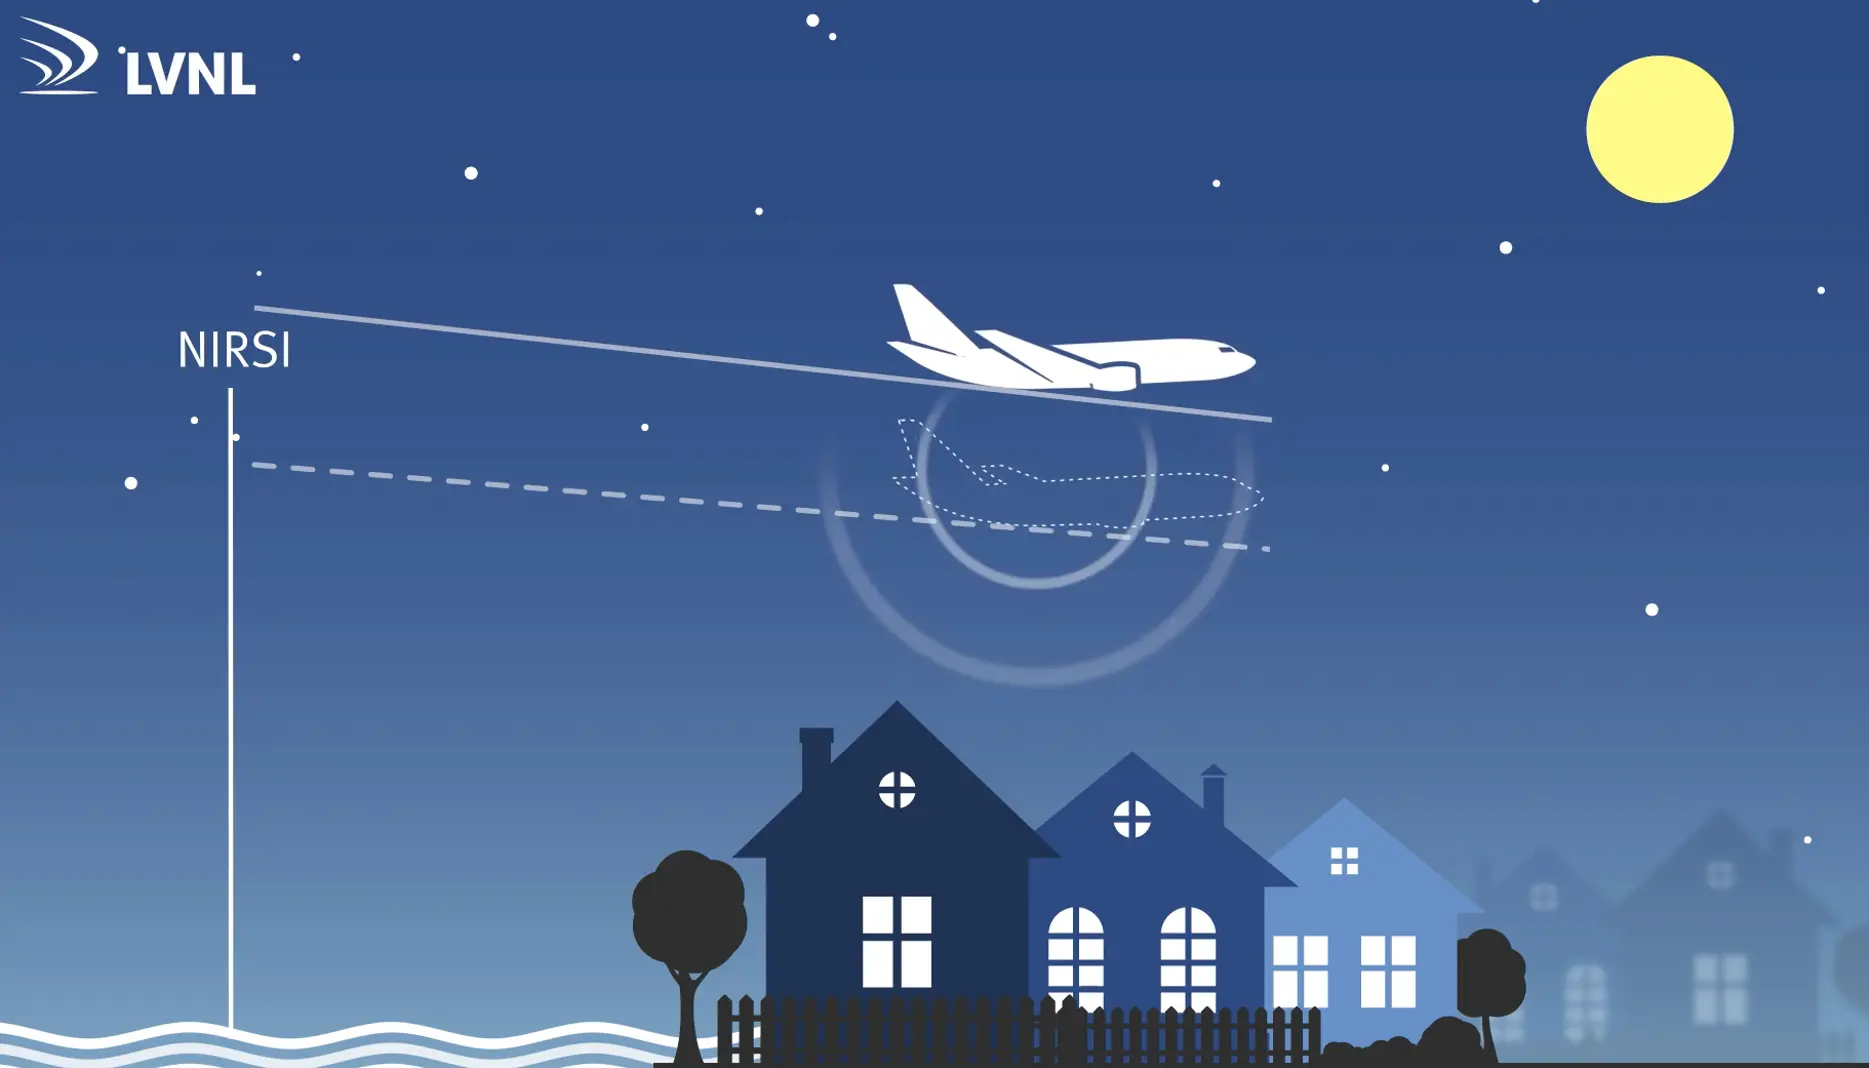 LVNL neemt nieuwe procedures voor afname geluidshinder nachtvluchten in gebruik